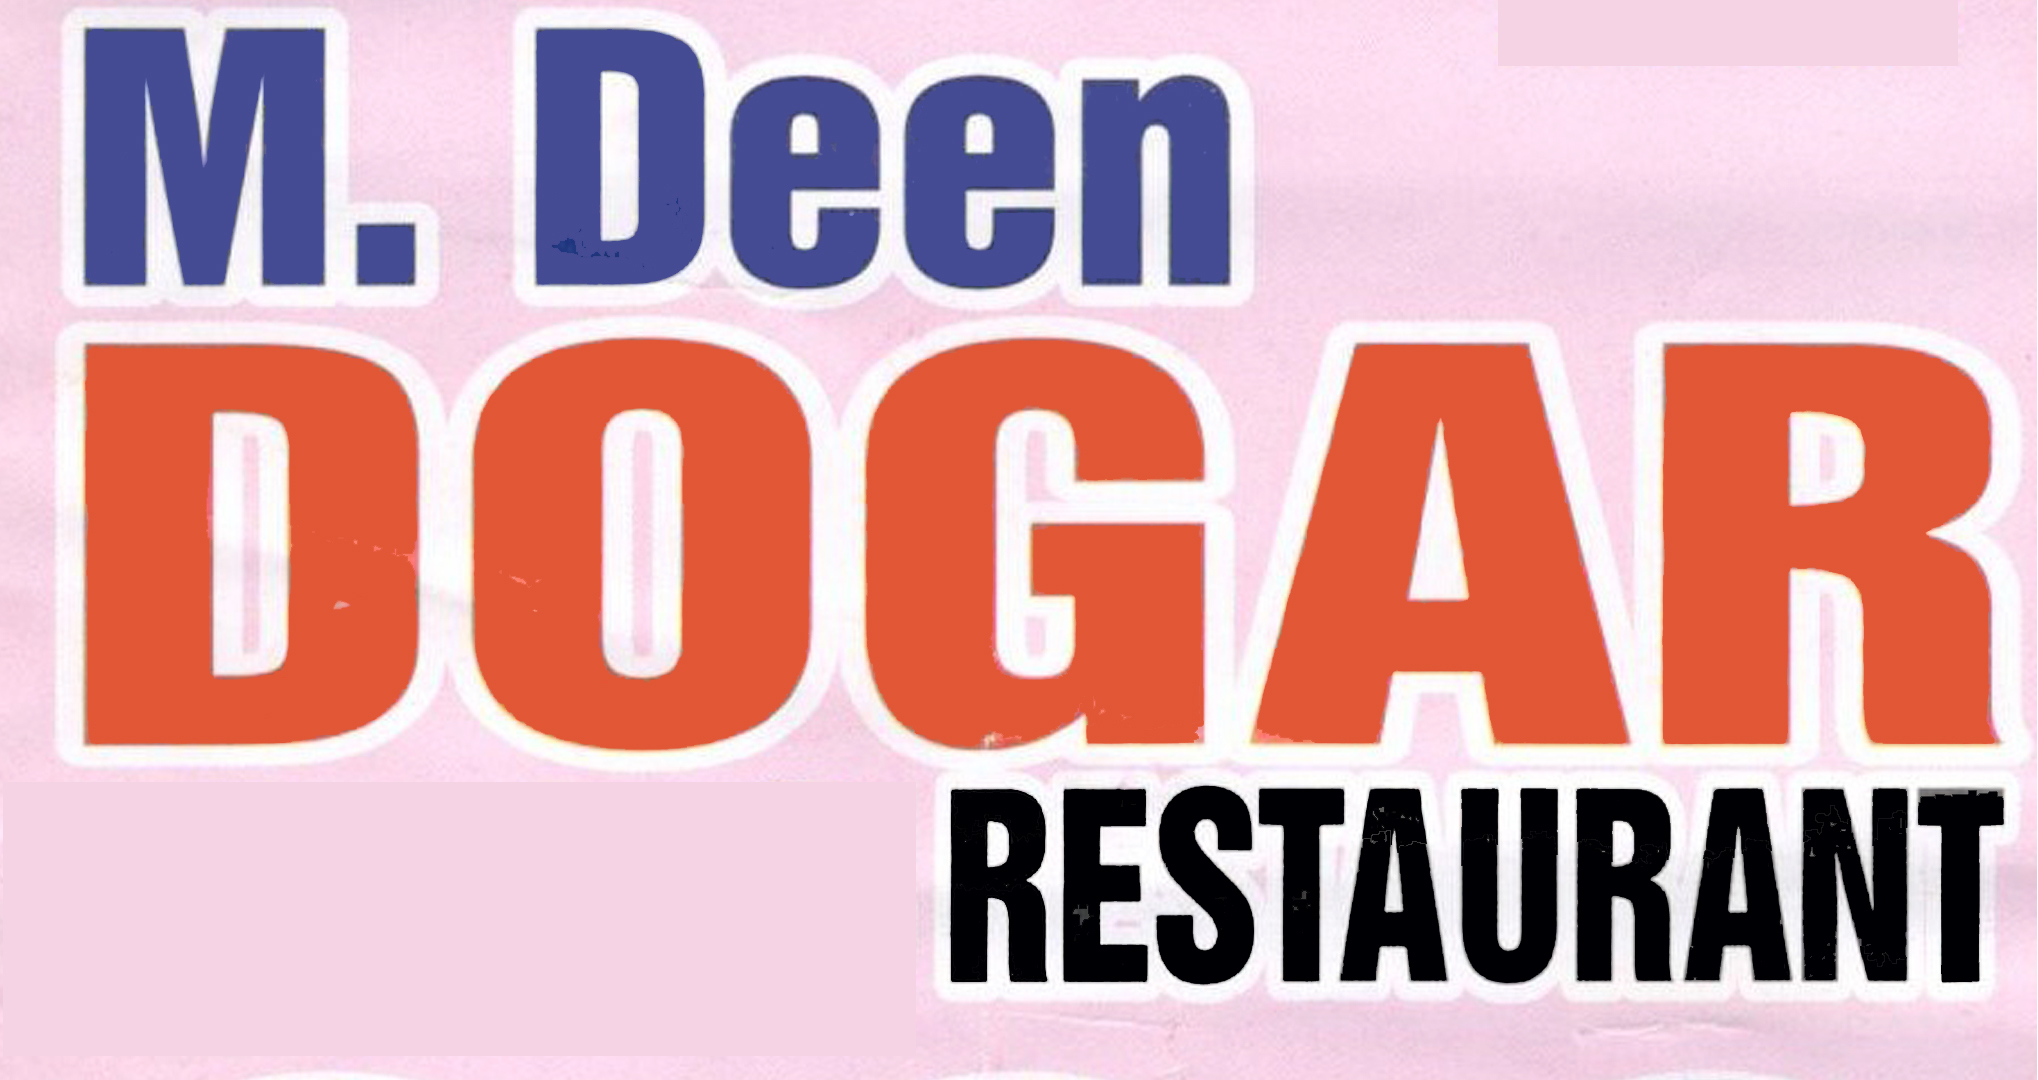 M. Deen Dogar Restaurant Logo